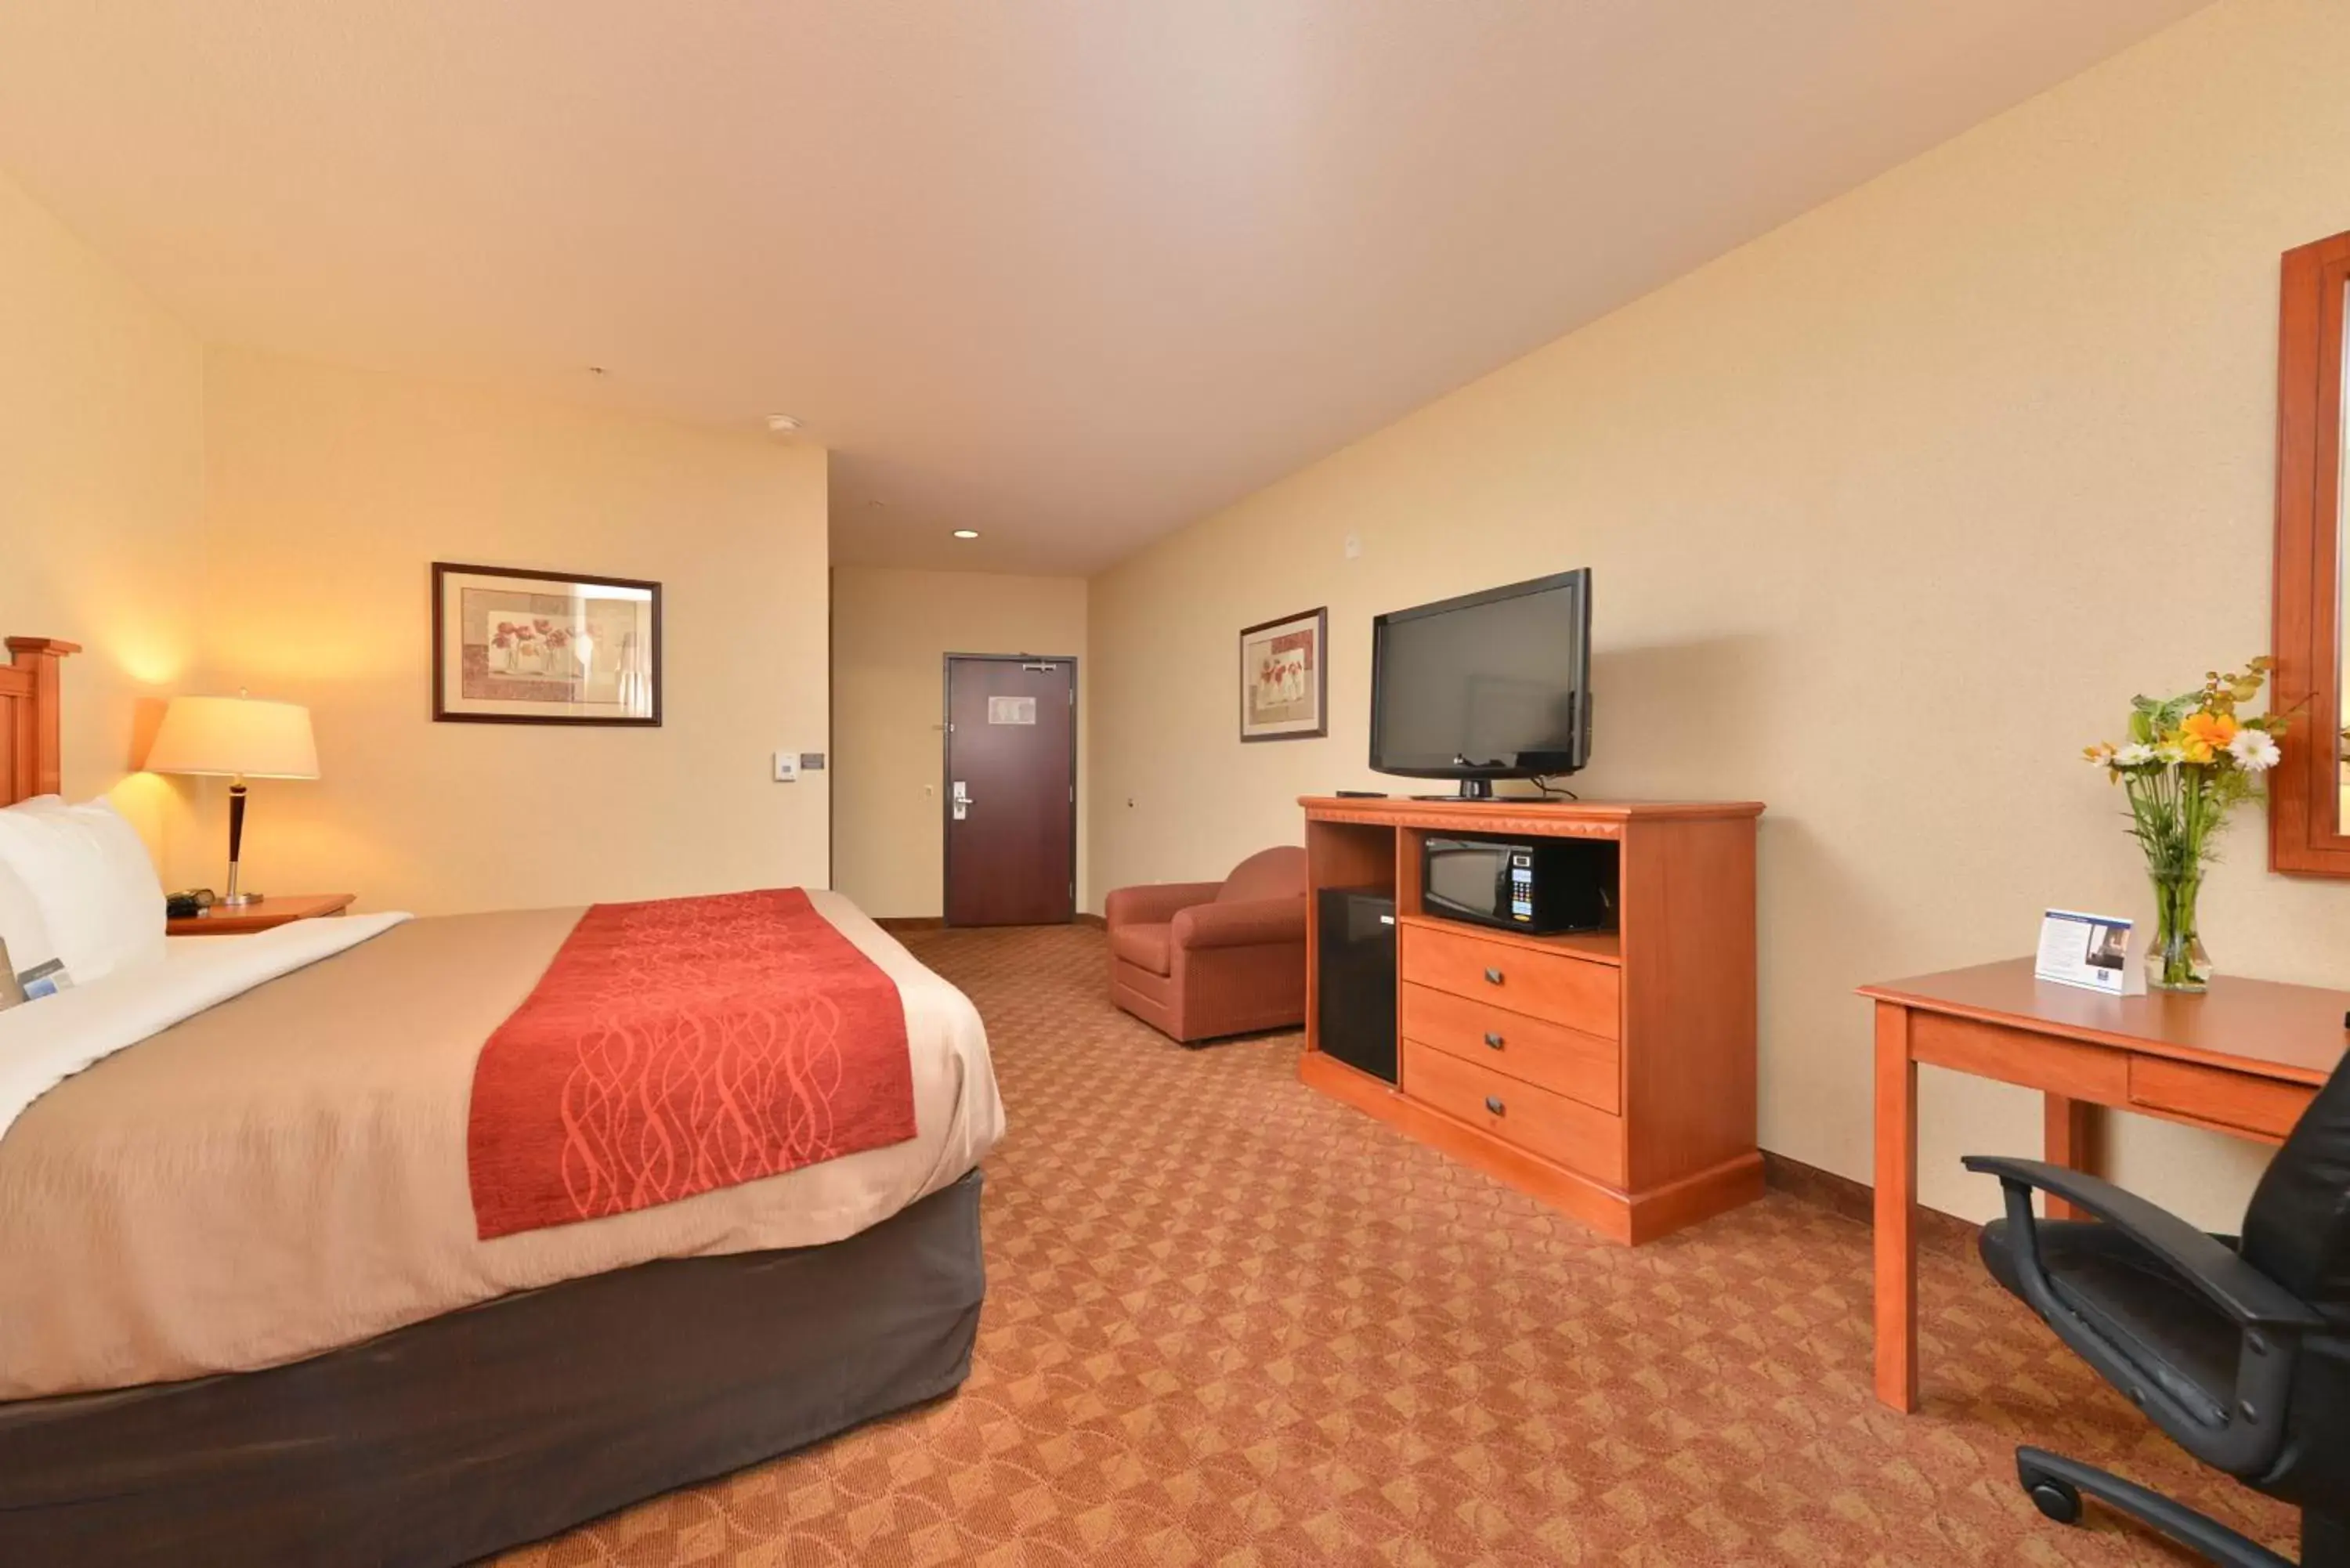 Standard King Room in Comfort Inn & Suites Las Vegas - Nellis